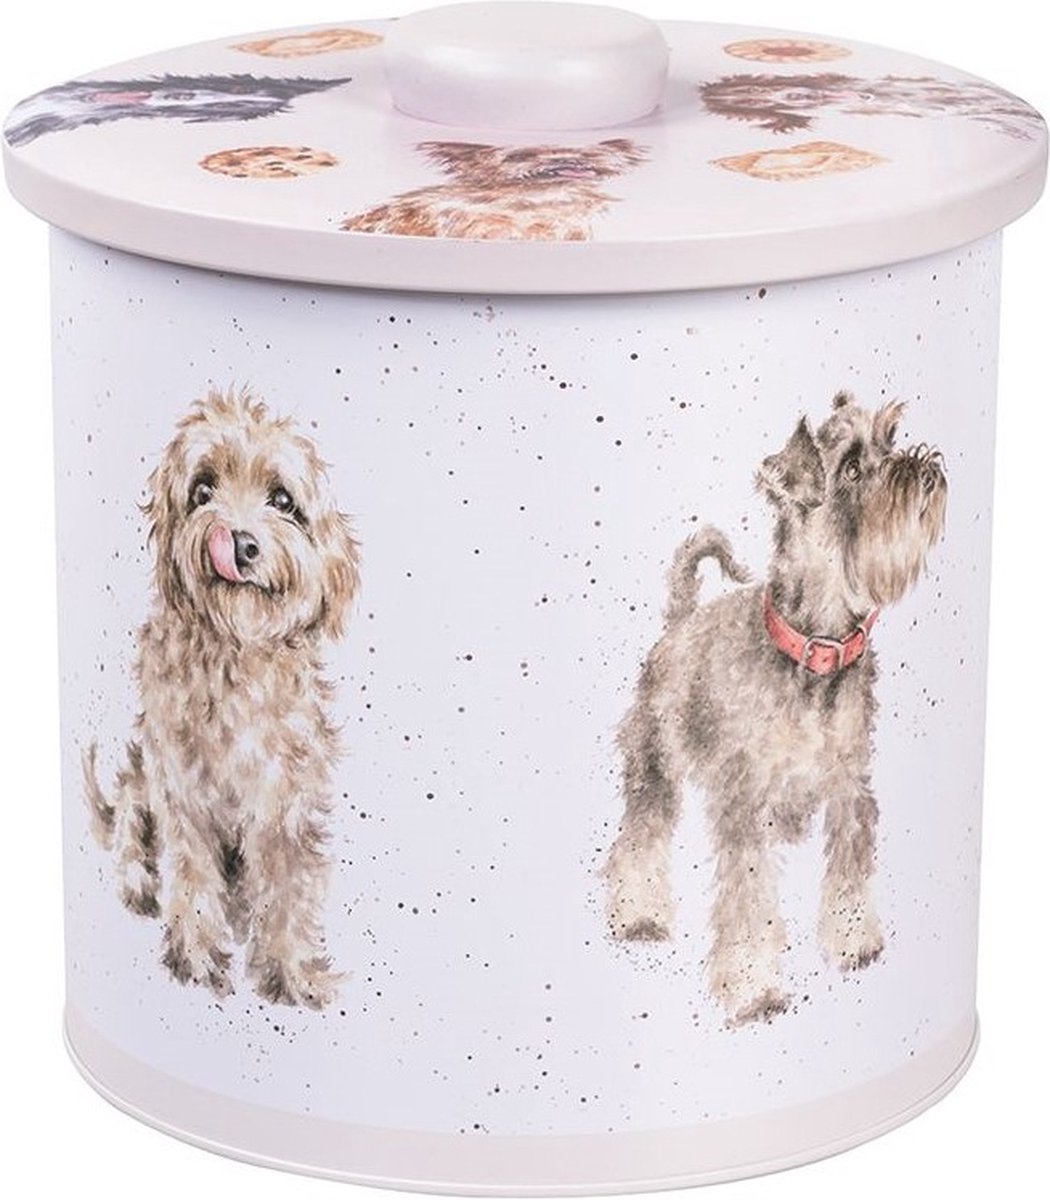 Voorraadblik - Wrendale Designs - Koektrommel - 'A Dog's Life' Dog Biscuit Barrel